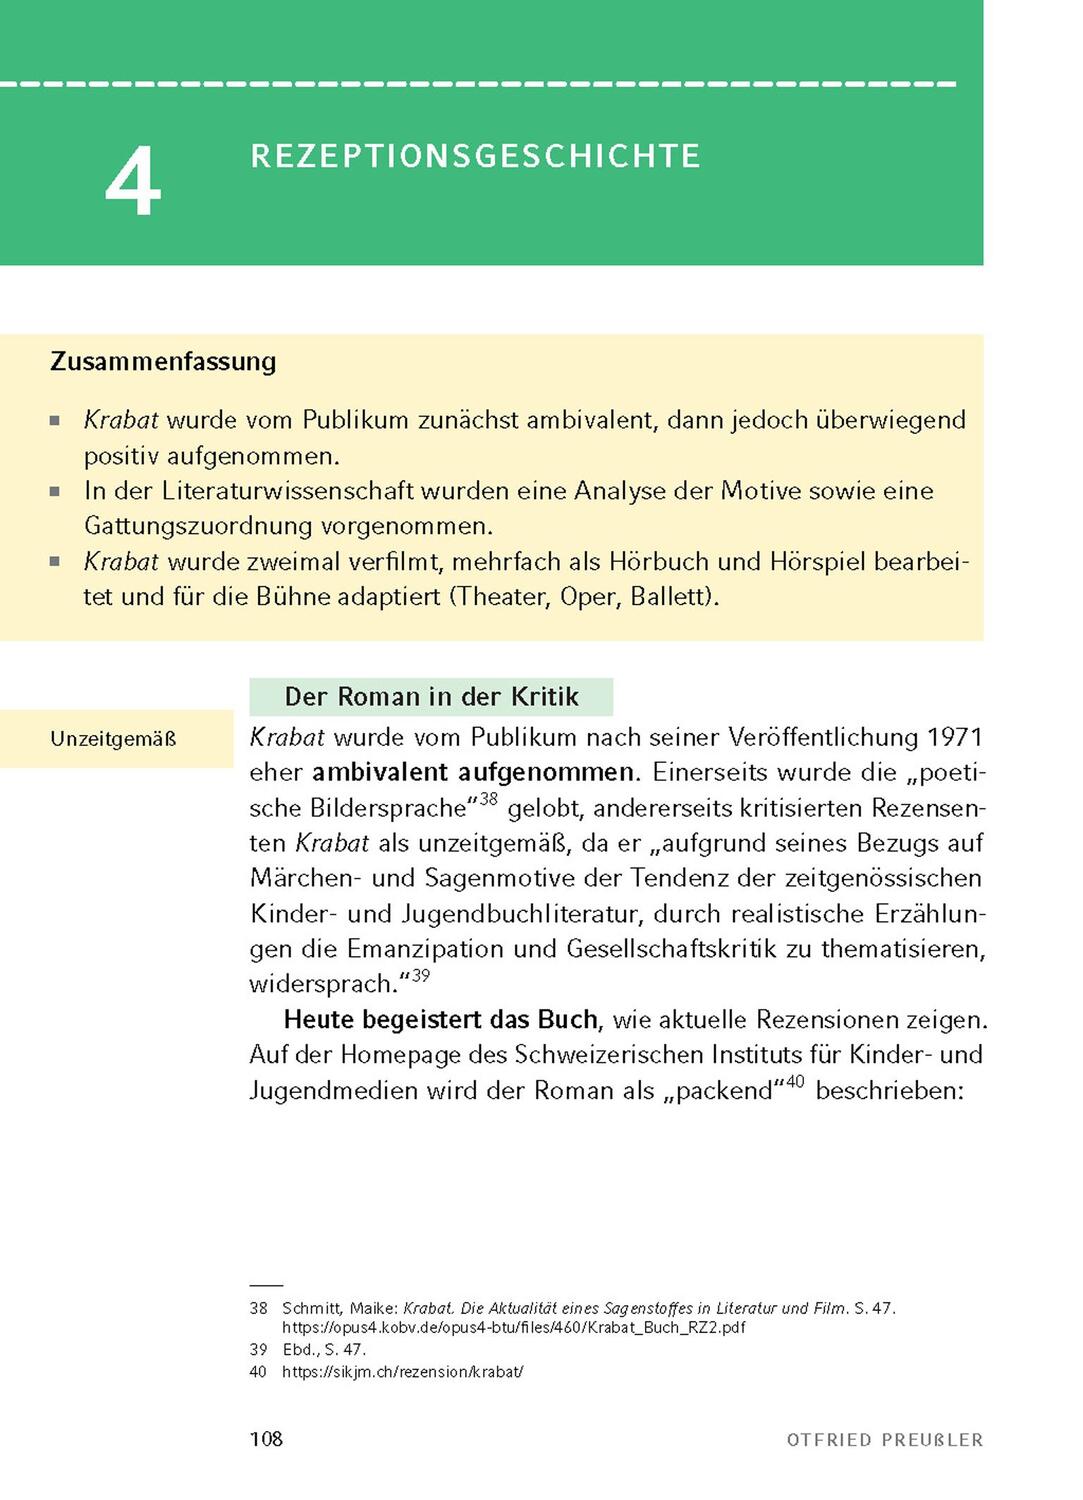 Bild: 9783804431461 | Krabat von Otfried Preußler - Textanalyse und Interpretation | Buch